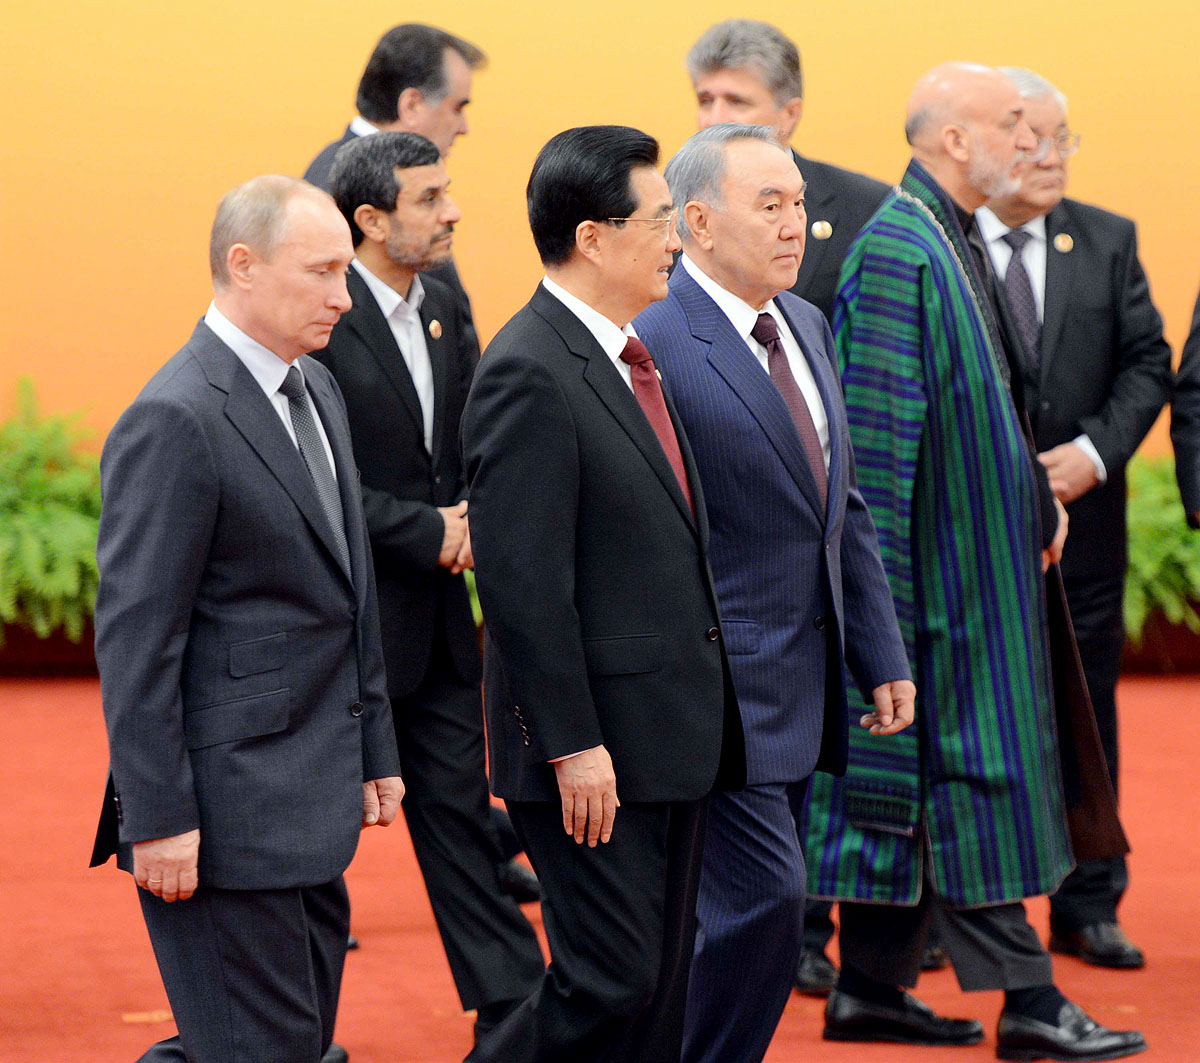 Elnöki arcvonal balról jobbra: Putyin, Ahmadinezsád, Hu, Nazarbajev és Karzai a családi fotó után. Megfigyelői státusz háromezermilliárd dollár reményében